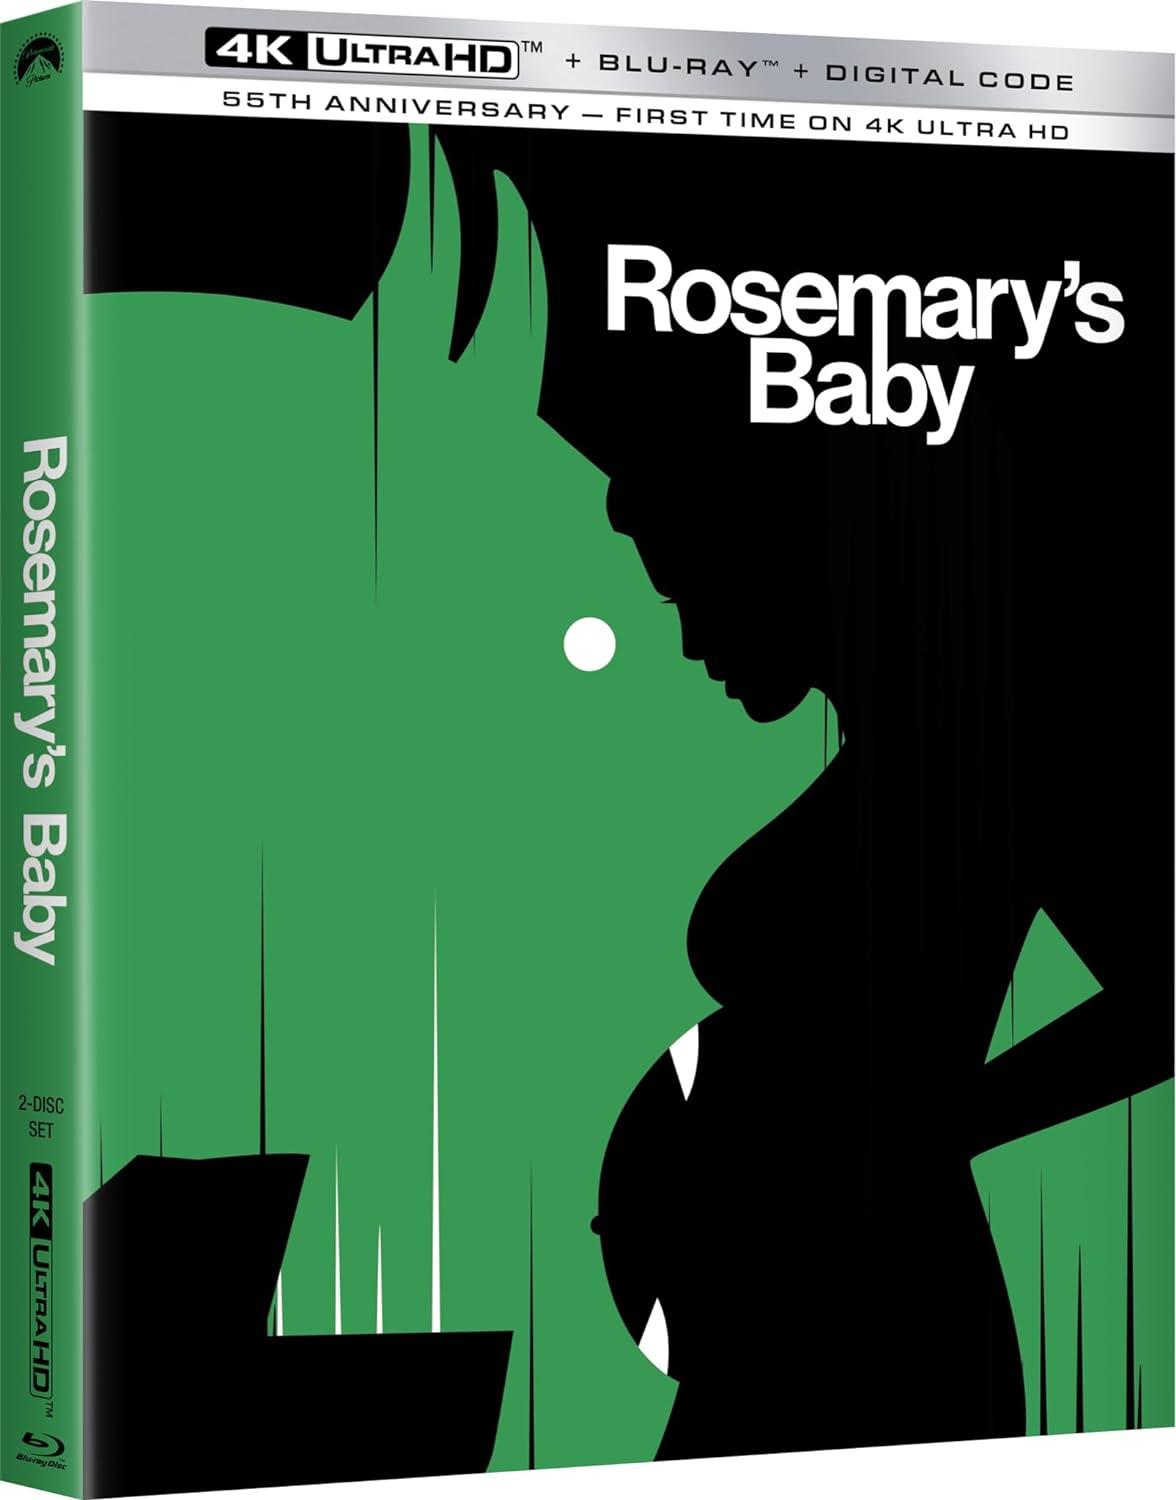 Boxkonsten av Rosemary's Baby har ett gigantiskt ansikte som äter Roseymarys ofödda barn